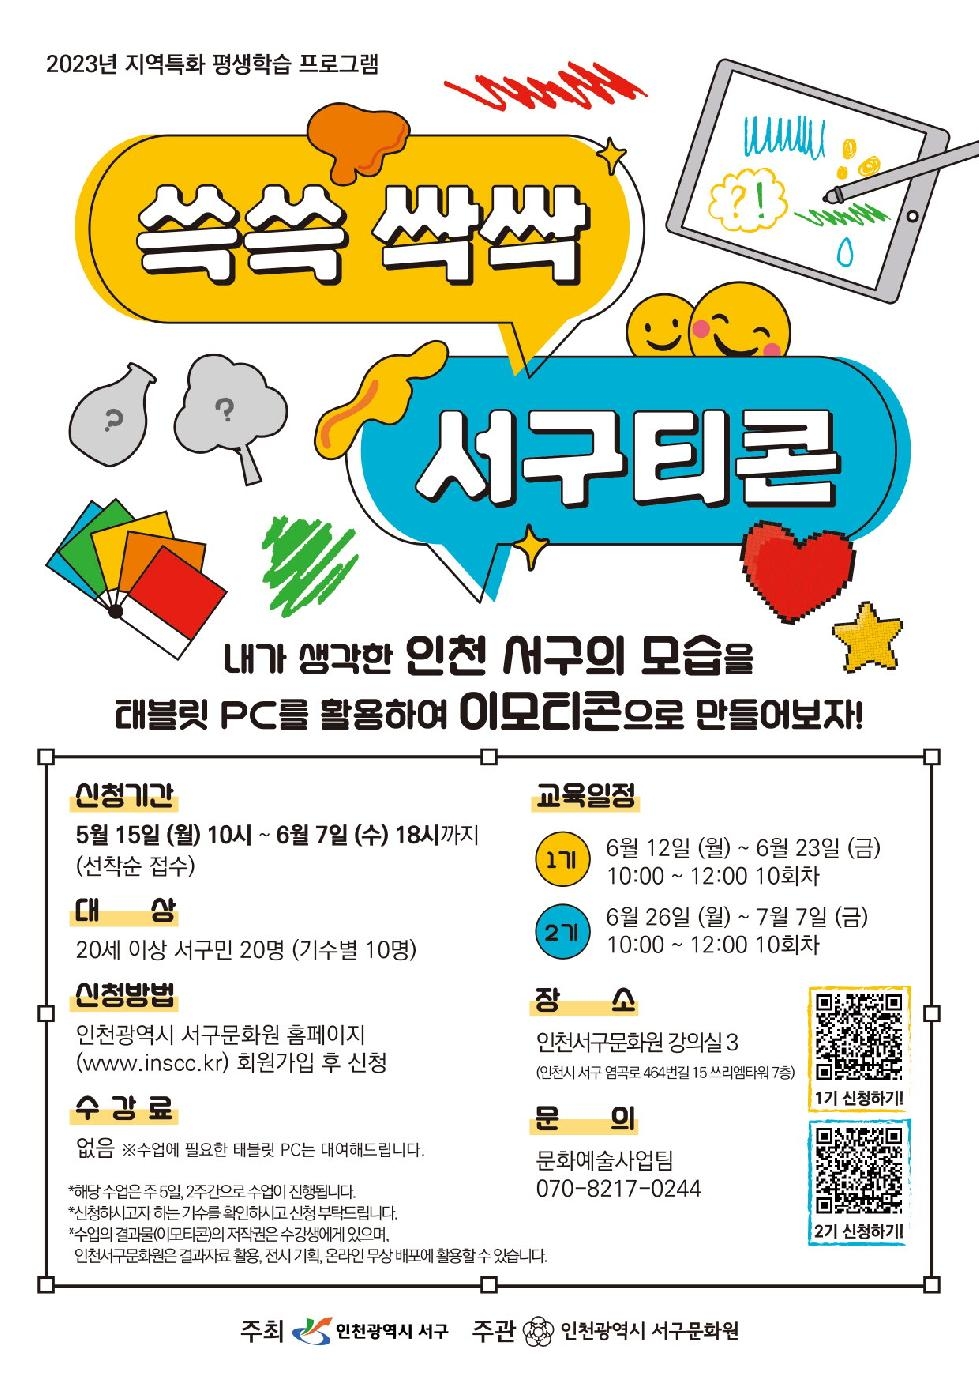 인천 서구문화원, 지역특화 평생학습 프로그램 참여자 모집